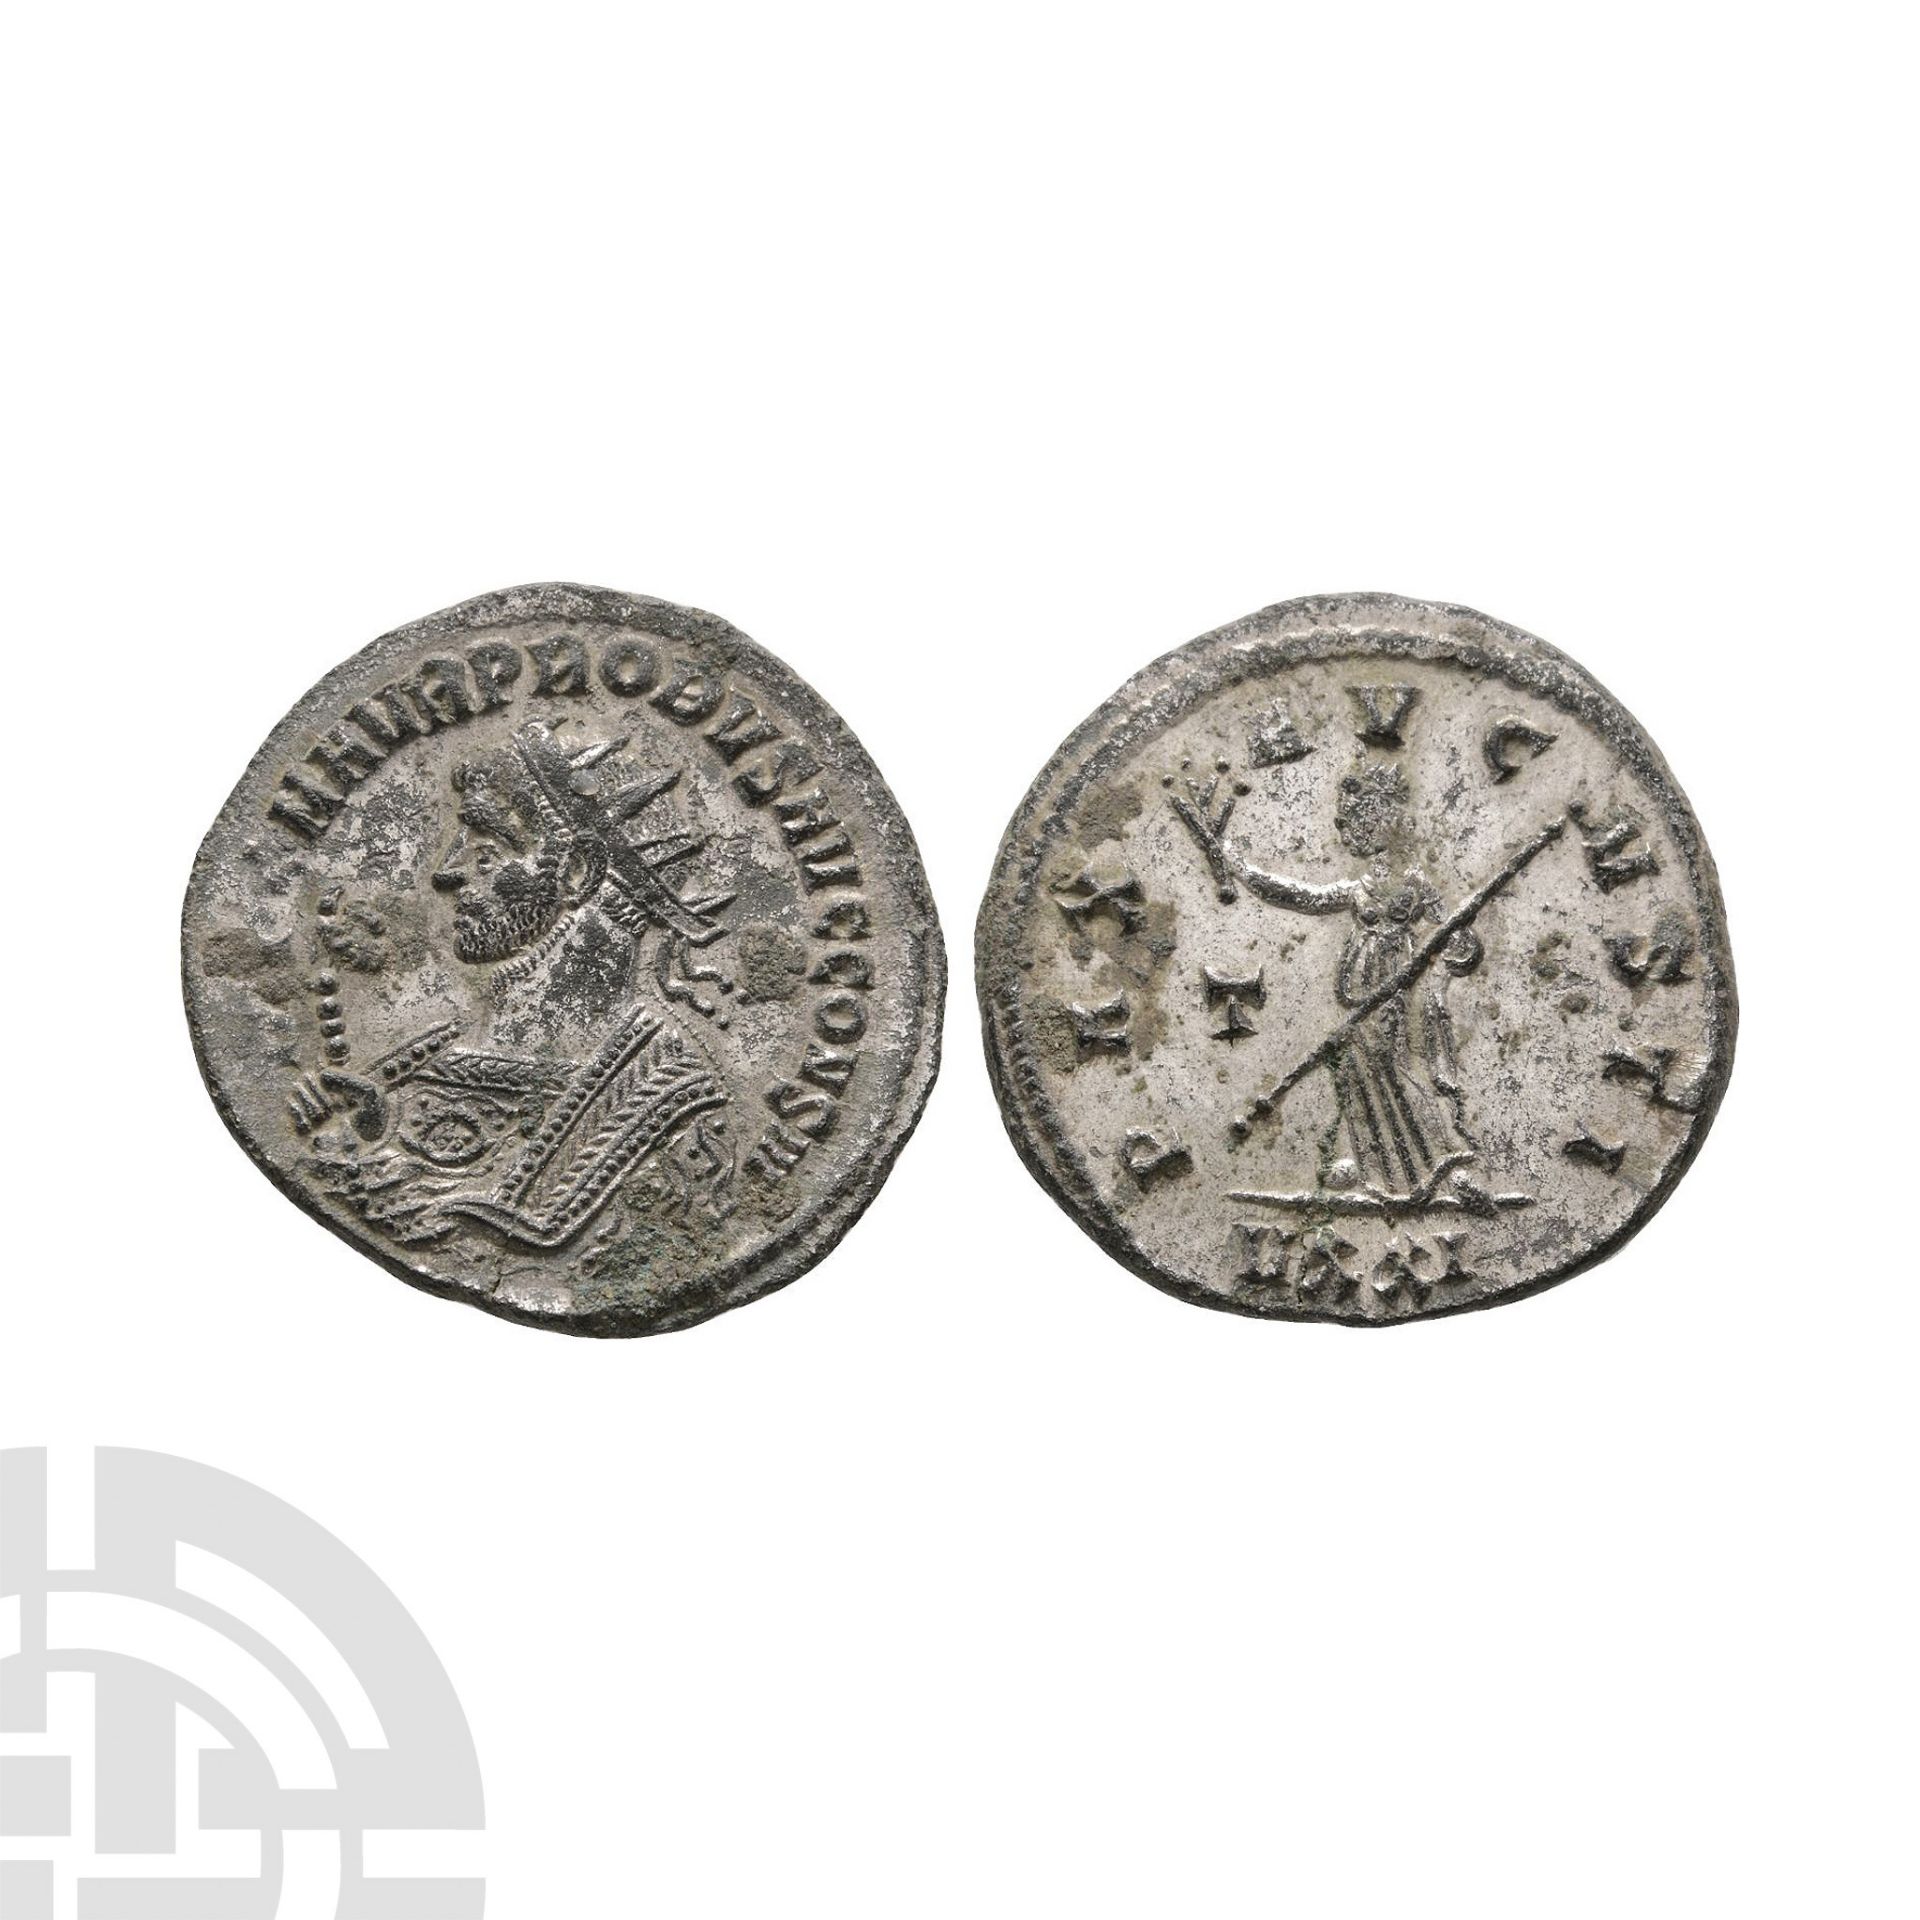 Ancient Roman Imperial Coins - Probus - AE Pax Antoninianus